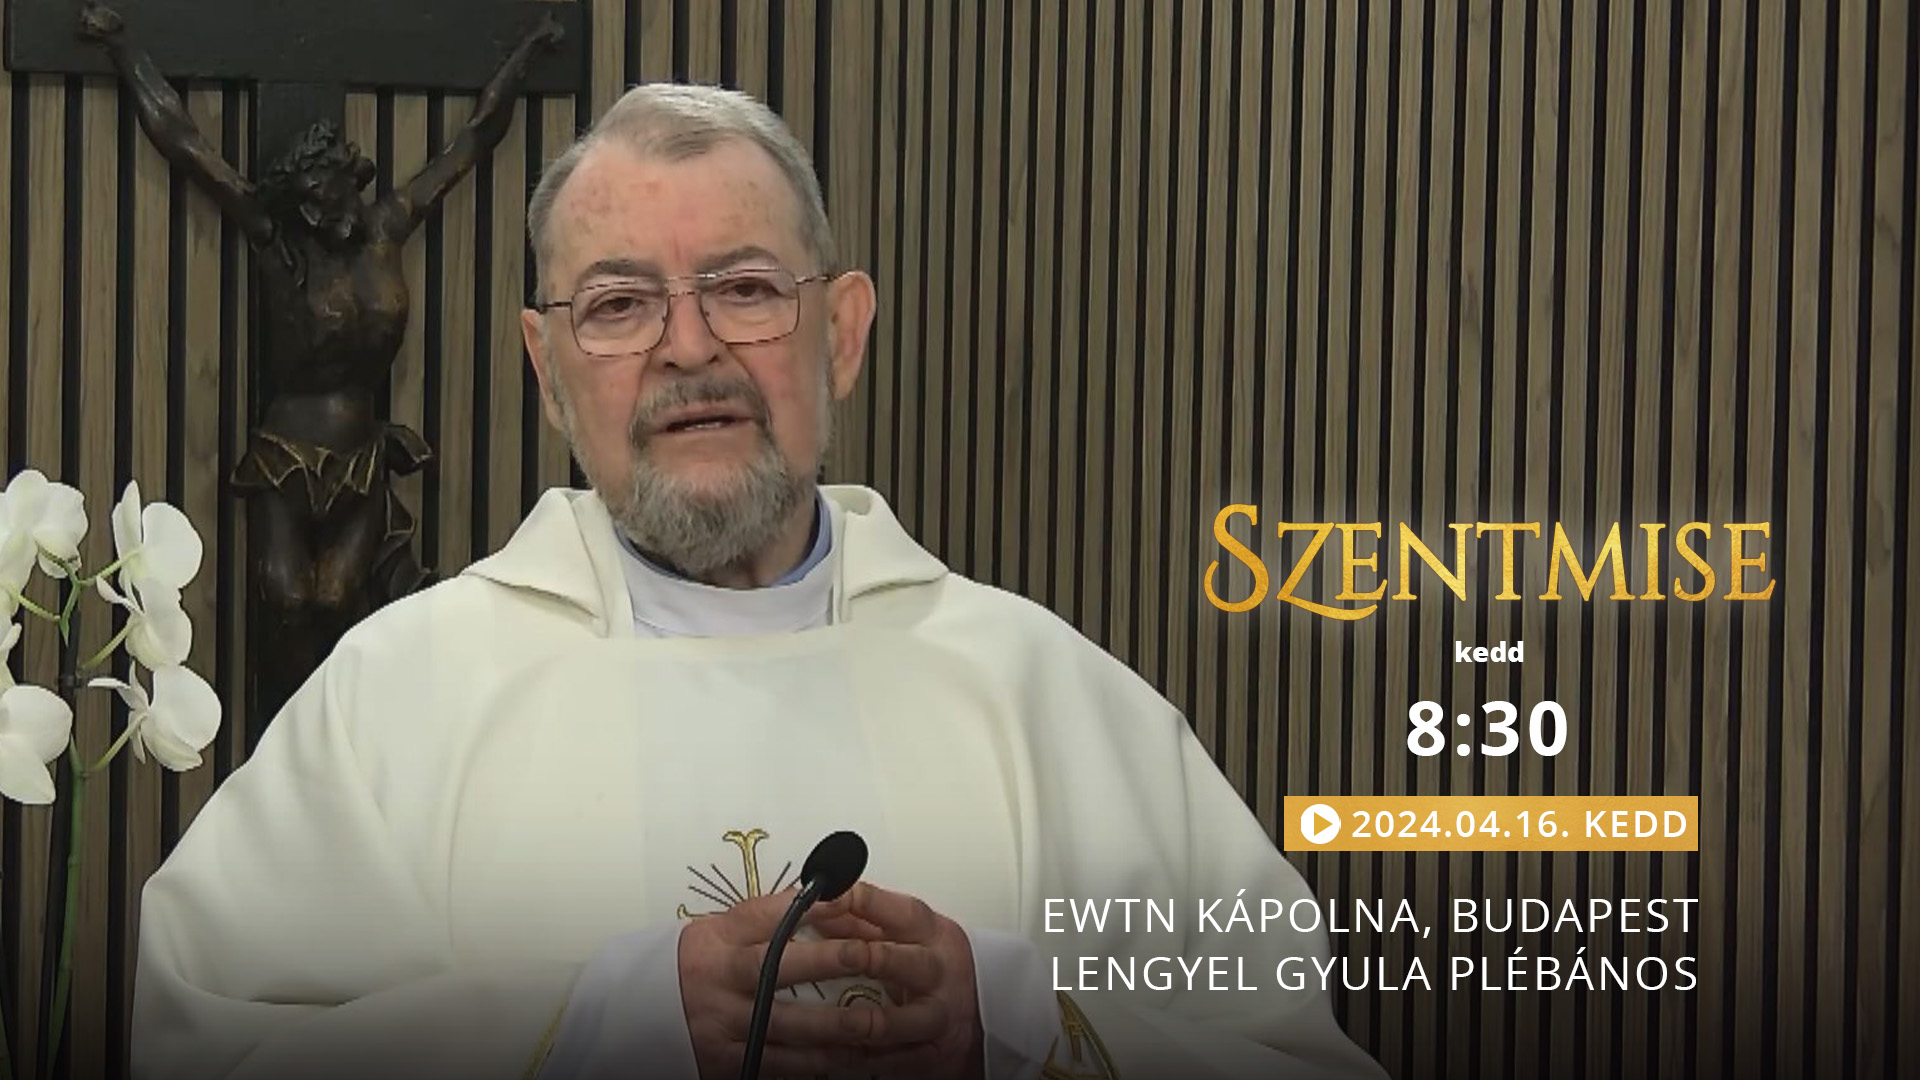 Szentmise a budapesti EWTN kápolnából – Lengyel Gyula plébános